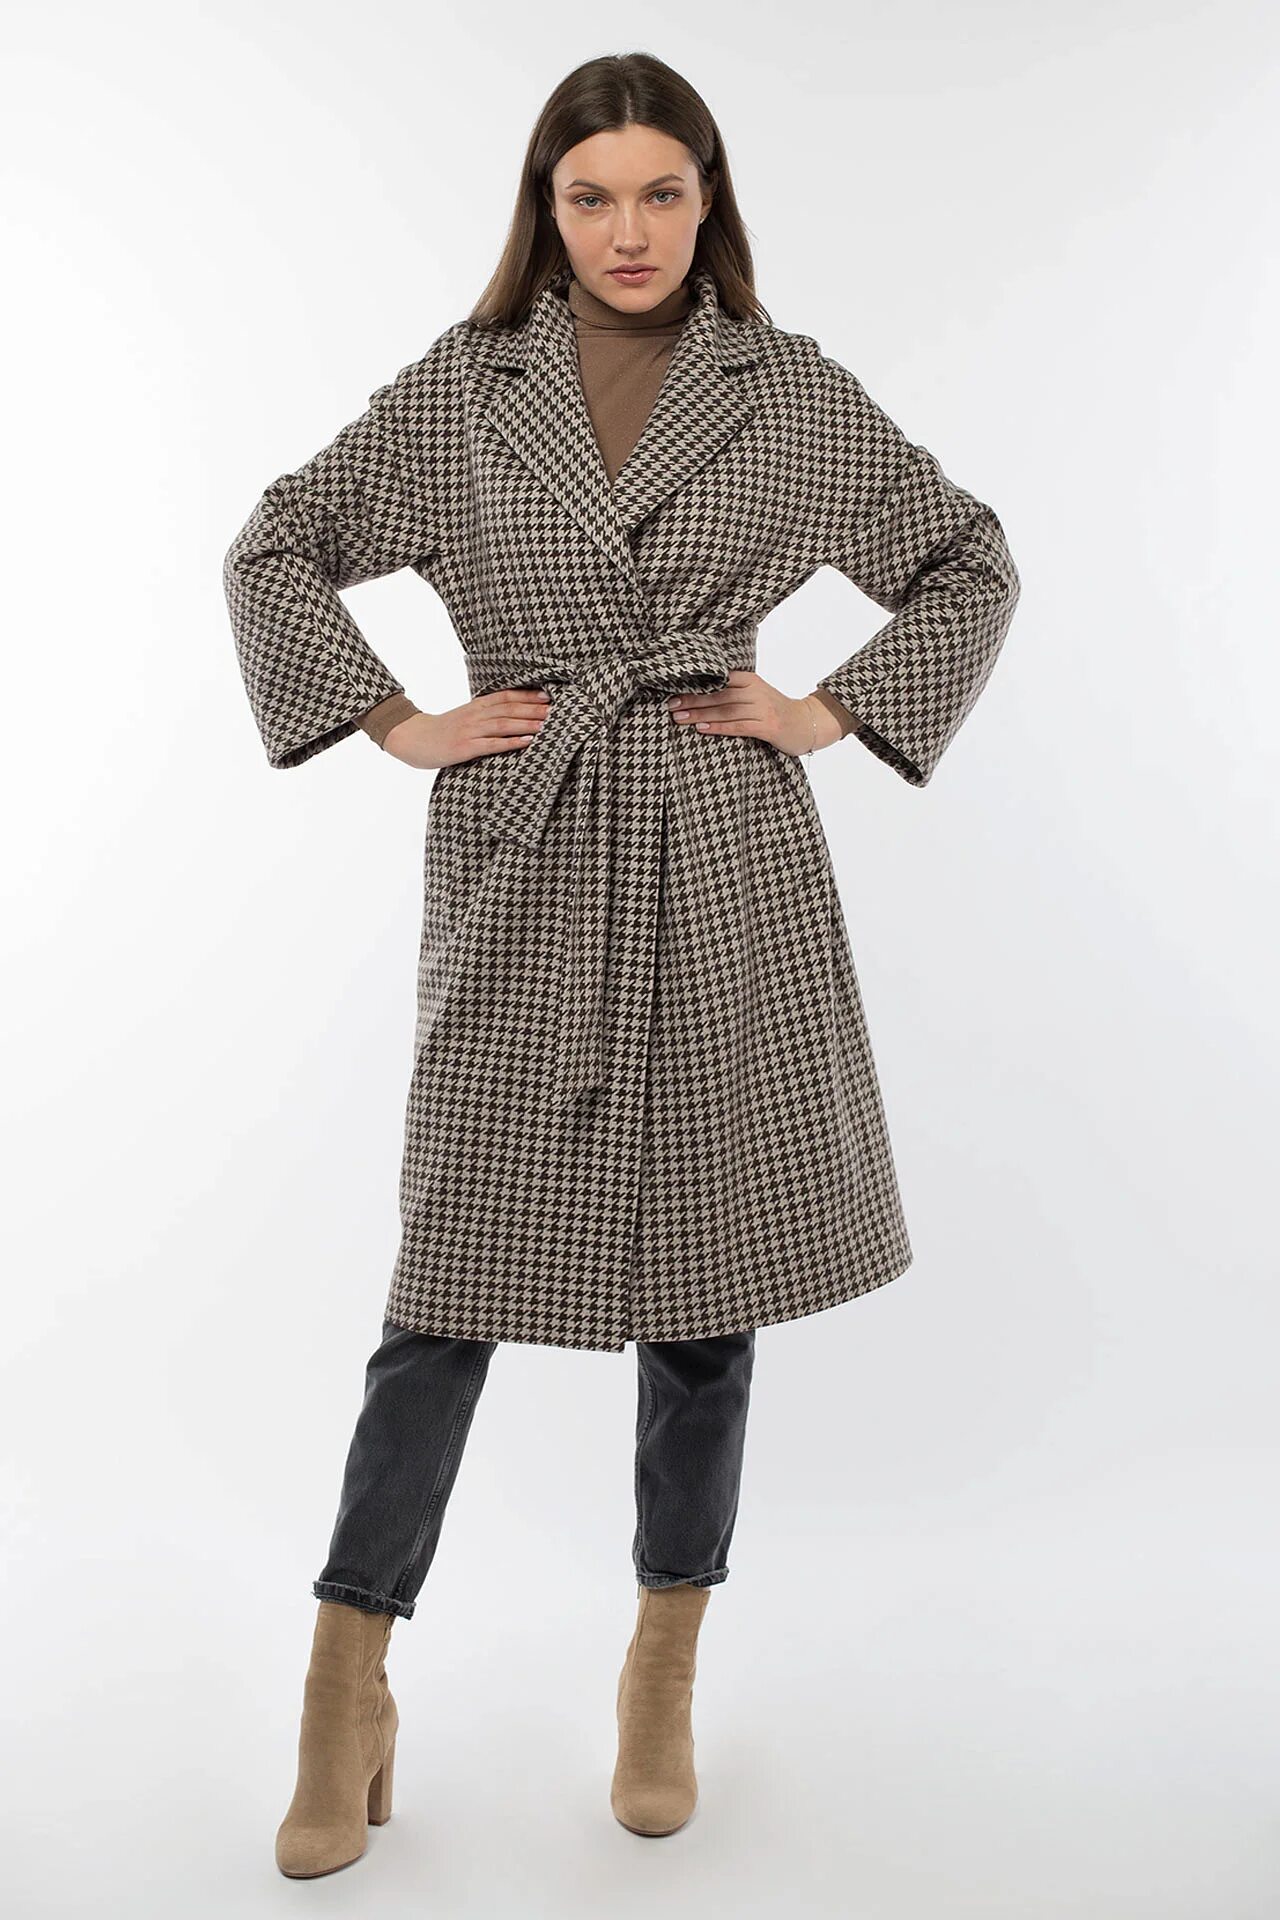 Пальто женское демисезонное "Classic Reserve" (пояс). Купить пальто в туле